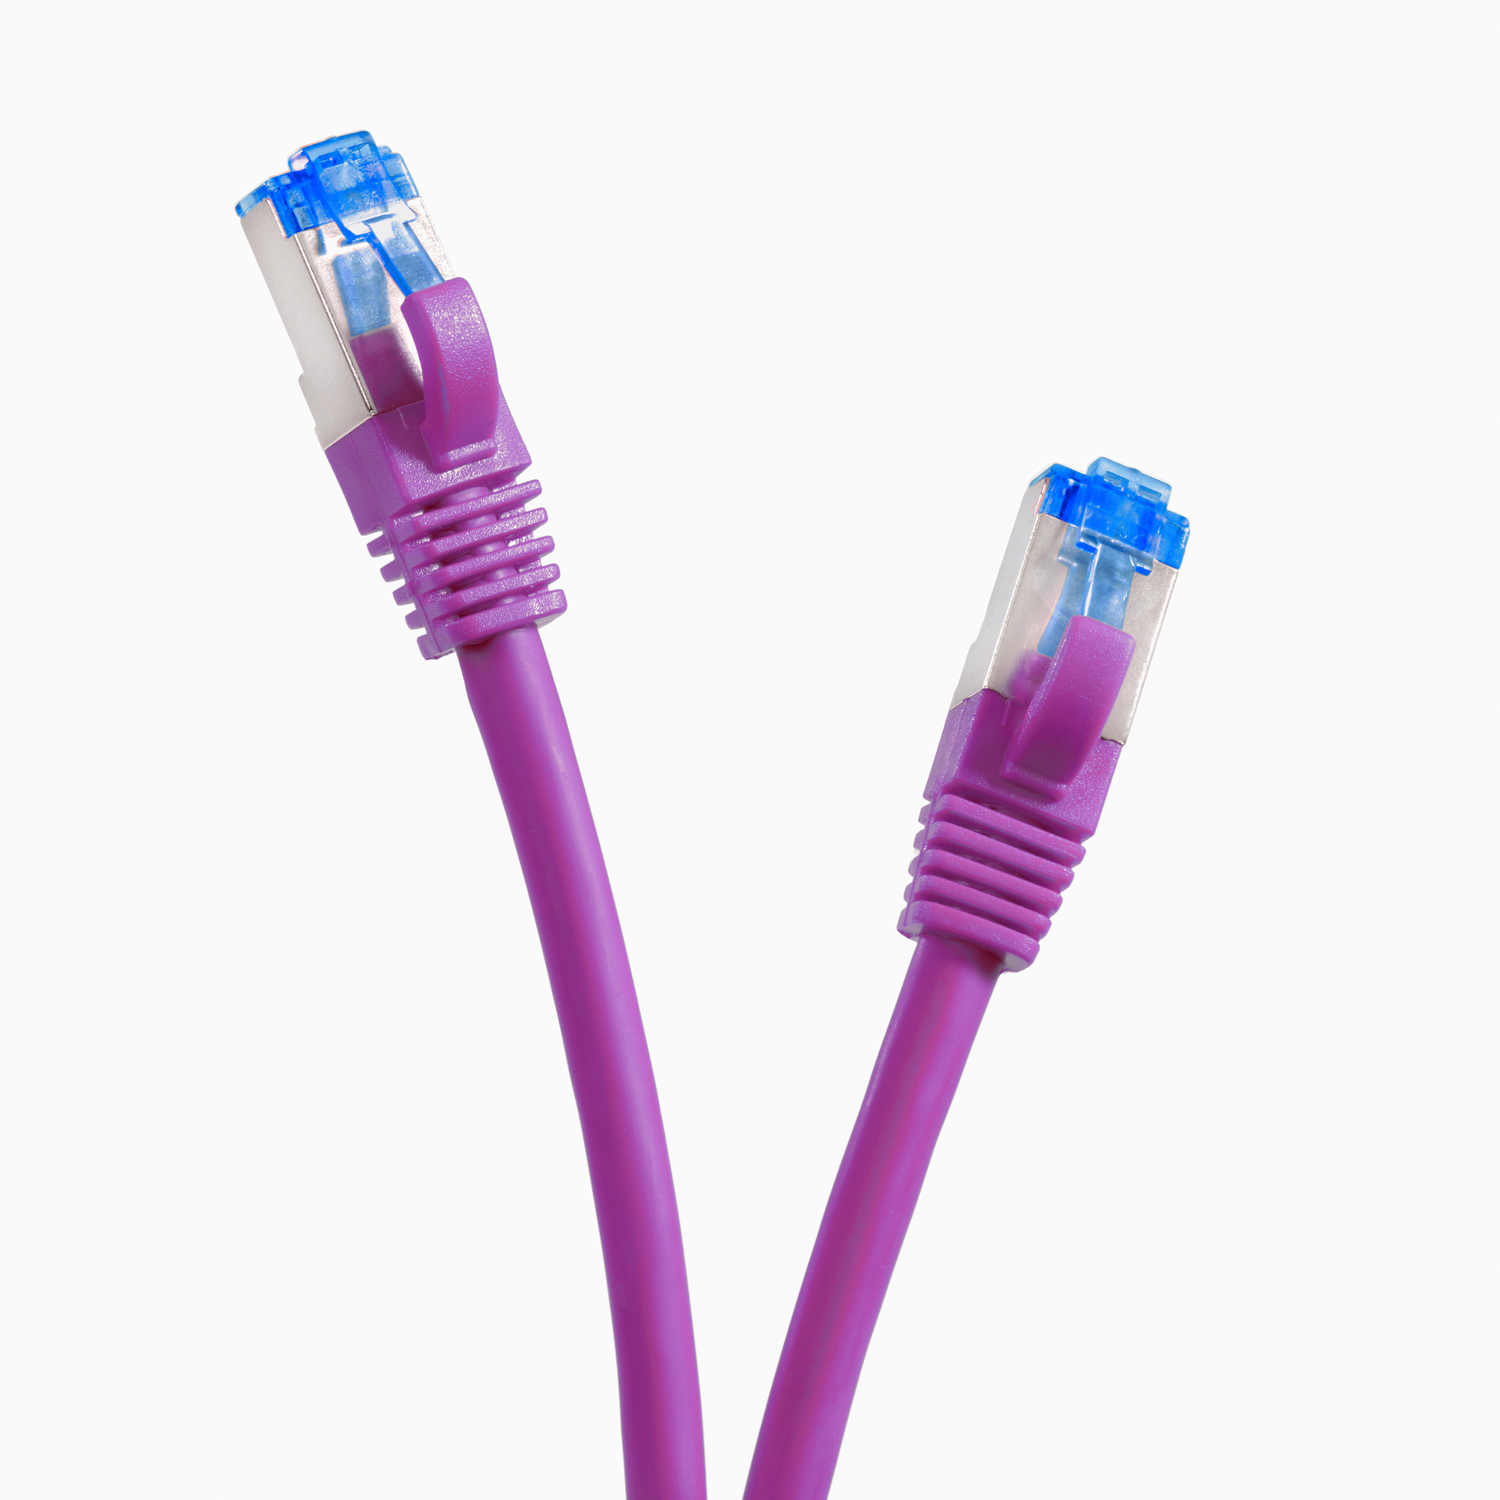 TPFNET 5er 1m Netzwerkkabel / 1 Pack violett, Netzwerkkabel, 10GBit, Patchkabel m S/FTP